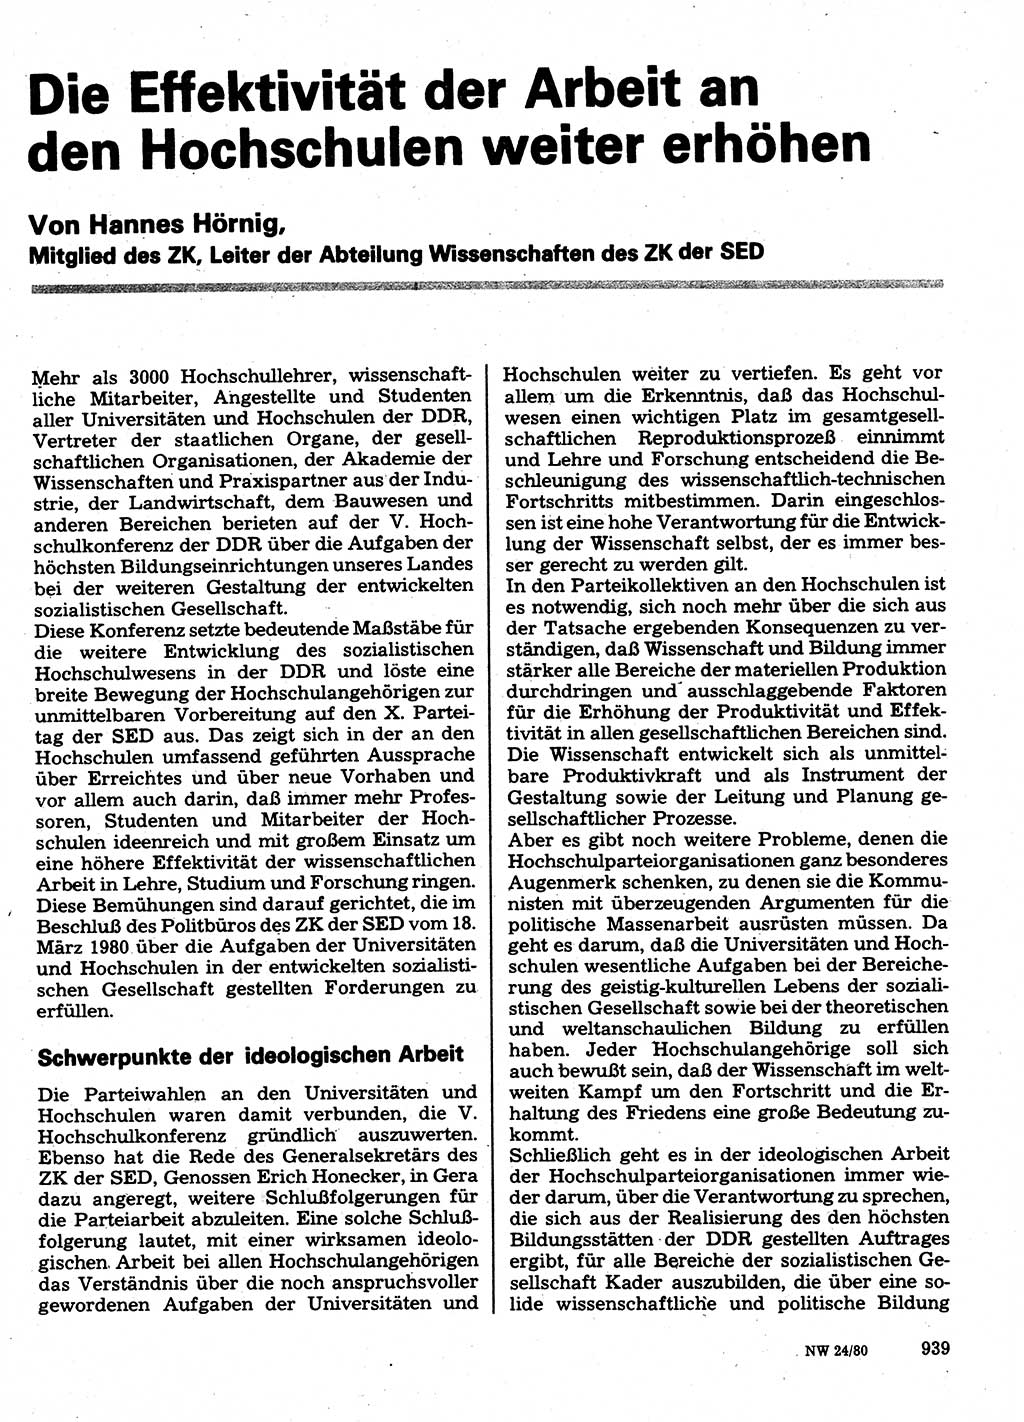 Neuer Weg (NW), Organ des Zentralkomitees (ZK) der SED (Sozialistische Einheitspartei Deutschlands) für Fragen des Parteilebens, 35. Jahrgang [Deutsche Demokratische Republik (DDR)] 1980, Seite 939 (NW ZK SED DDR 1980, S. 939)